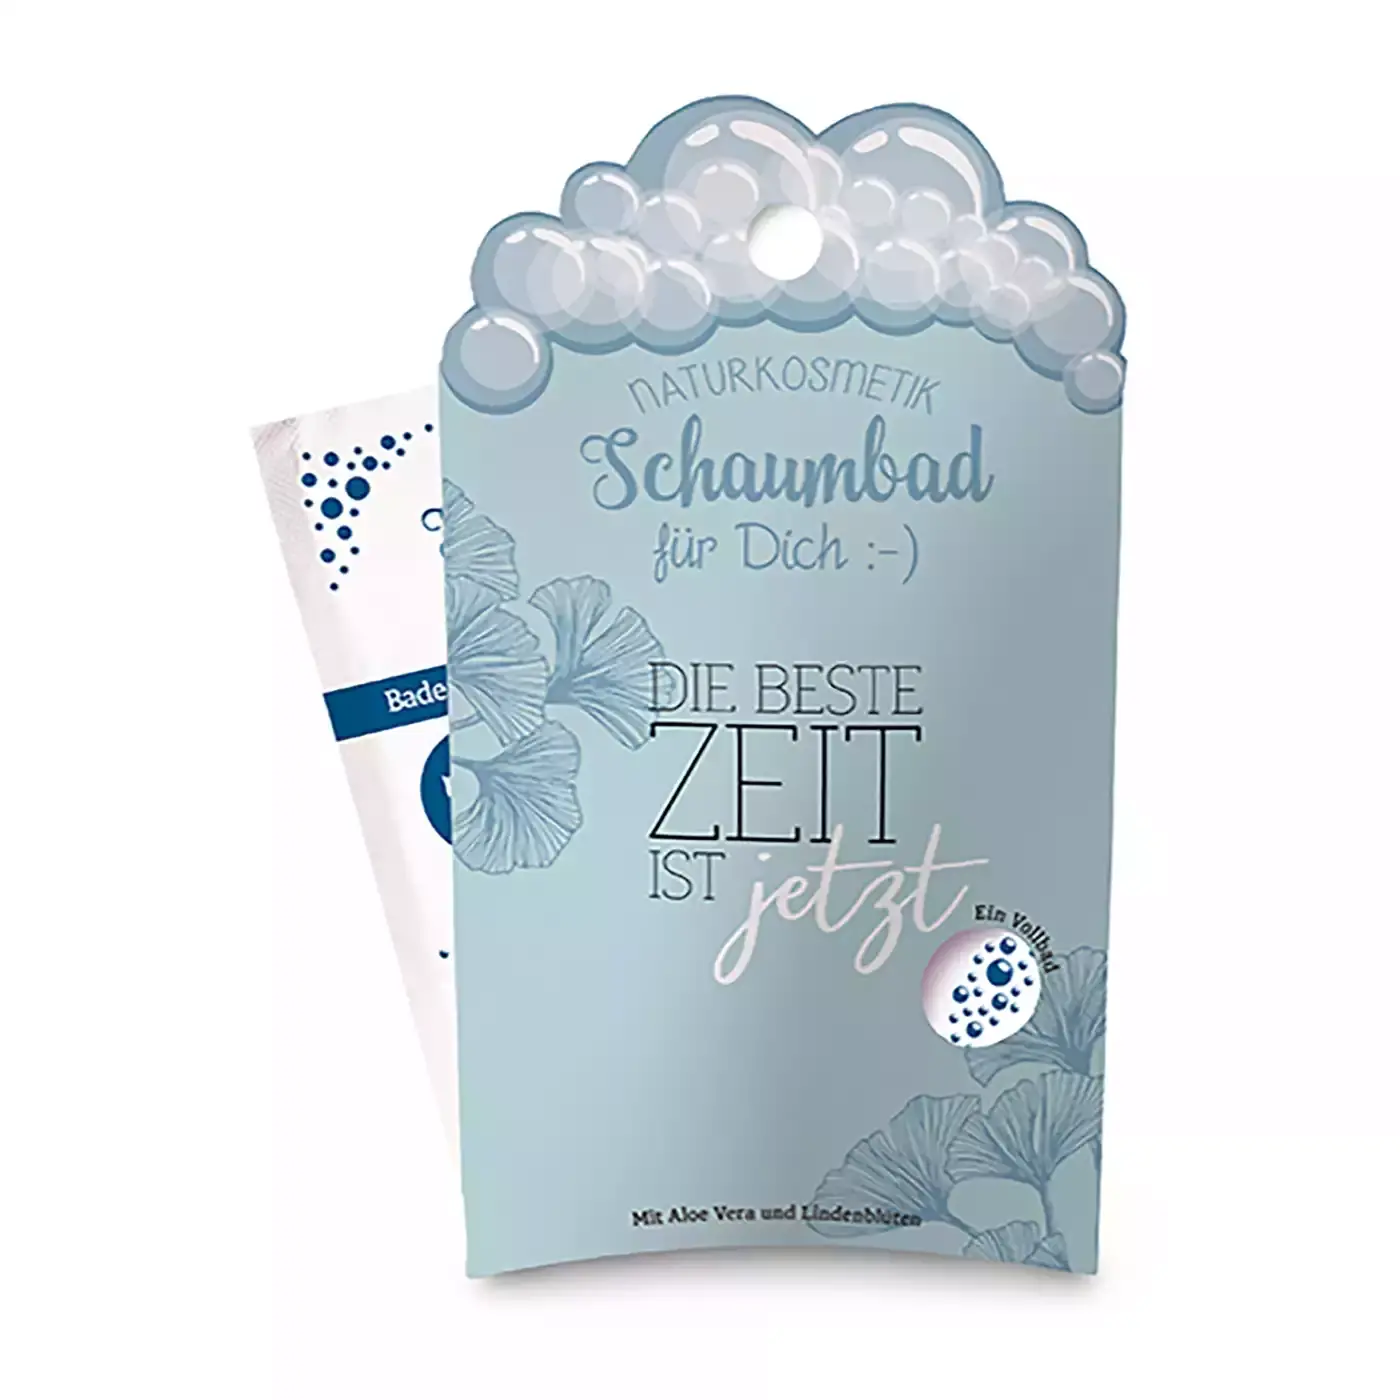 Schaumbad 40 ml "Beste Zeit" la Vida 2000578171025 1